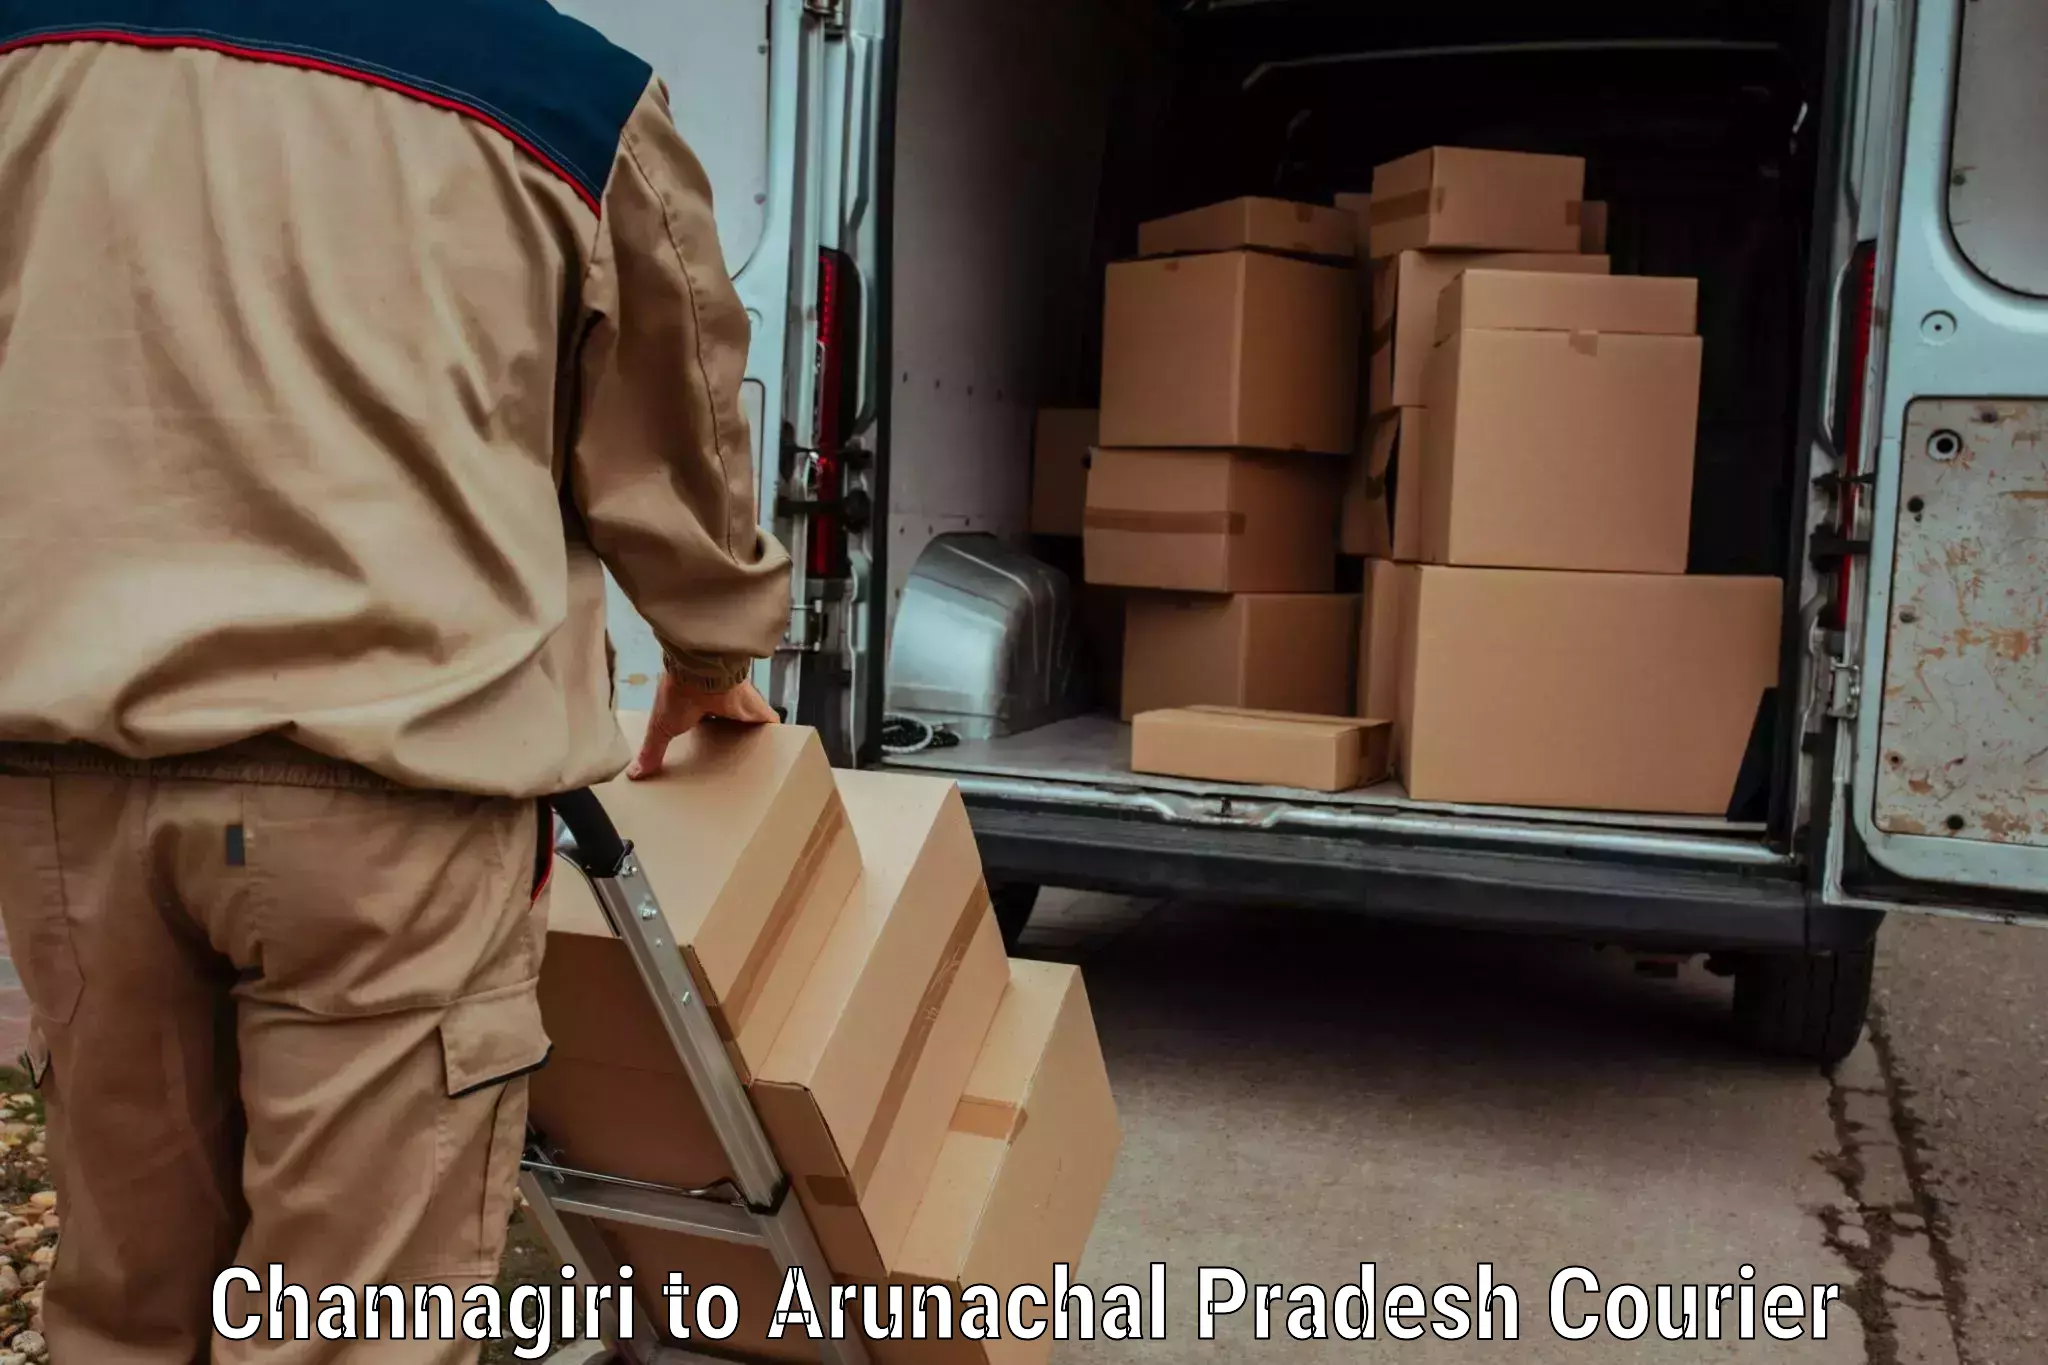 Quick dispatch service Channagiri to Arunachal Pradesh